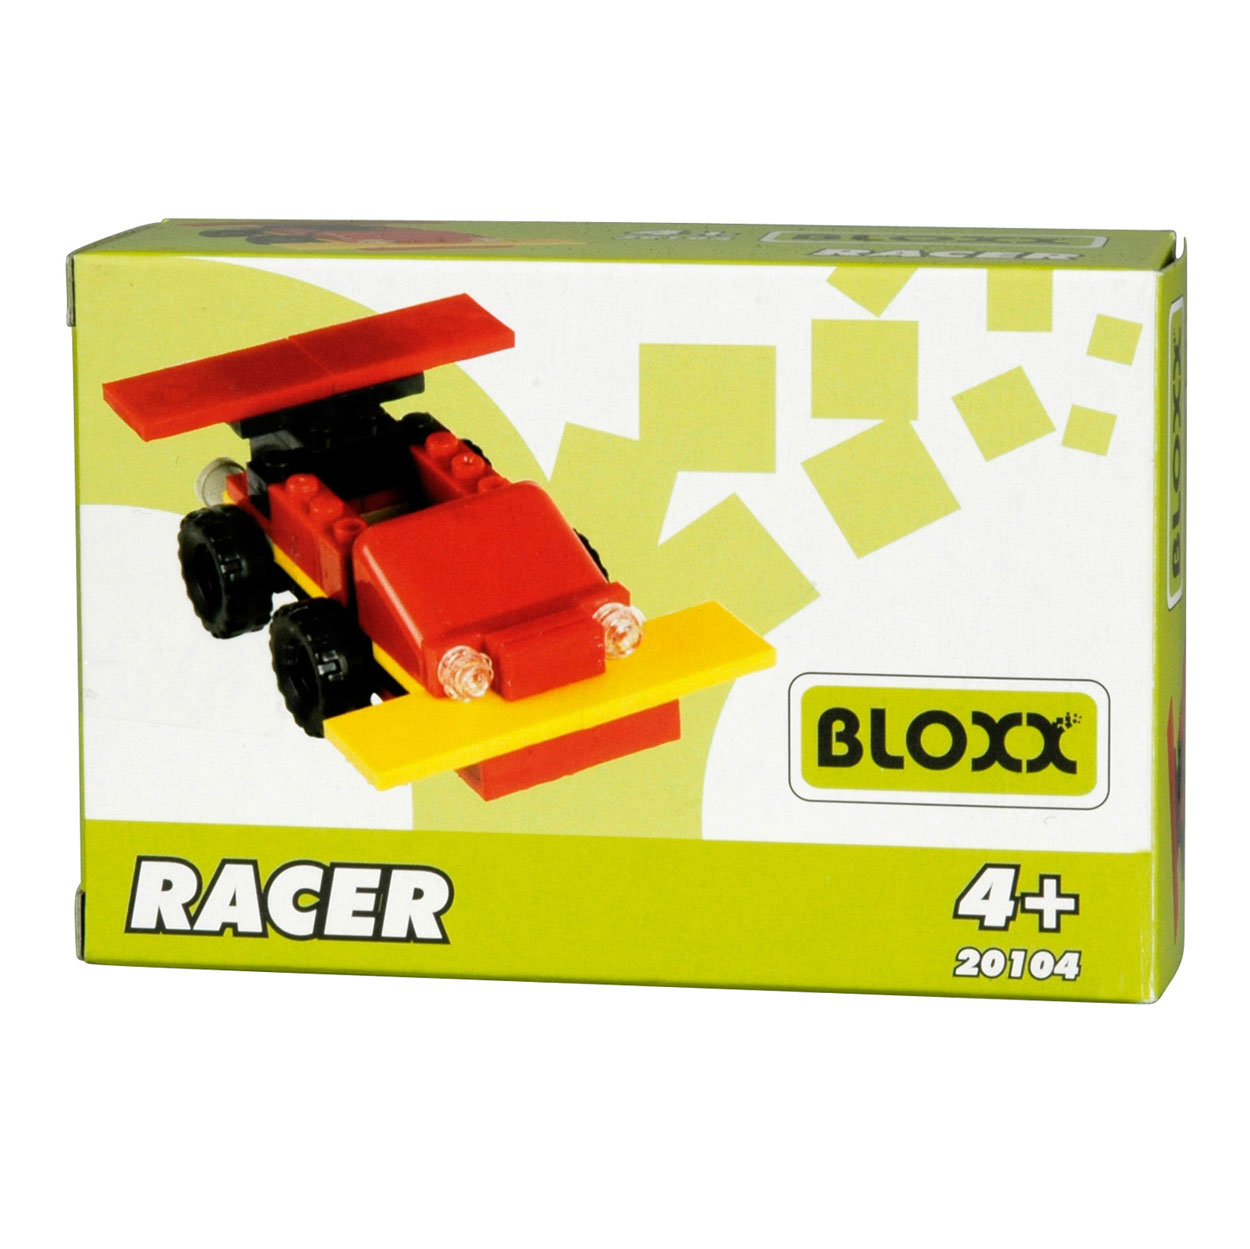 Racer Bloxx